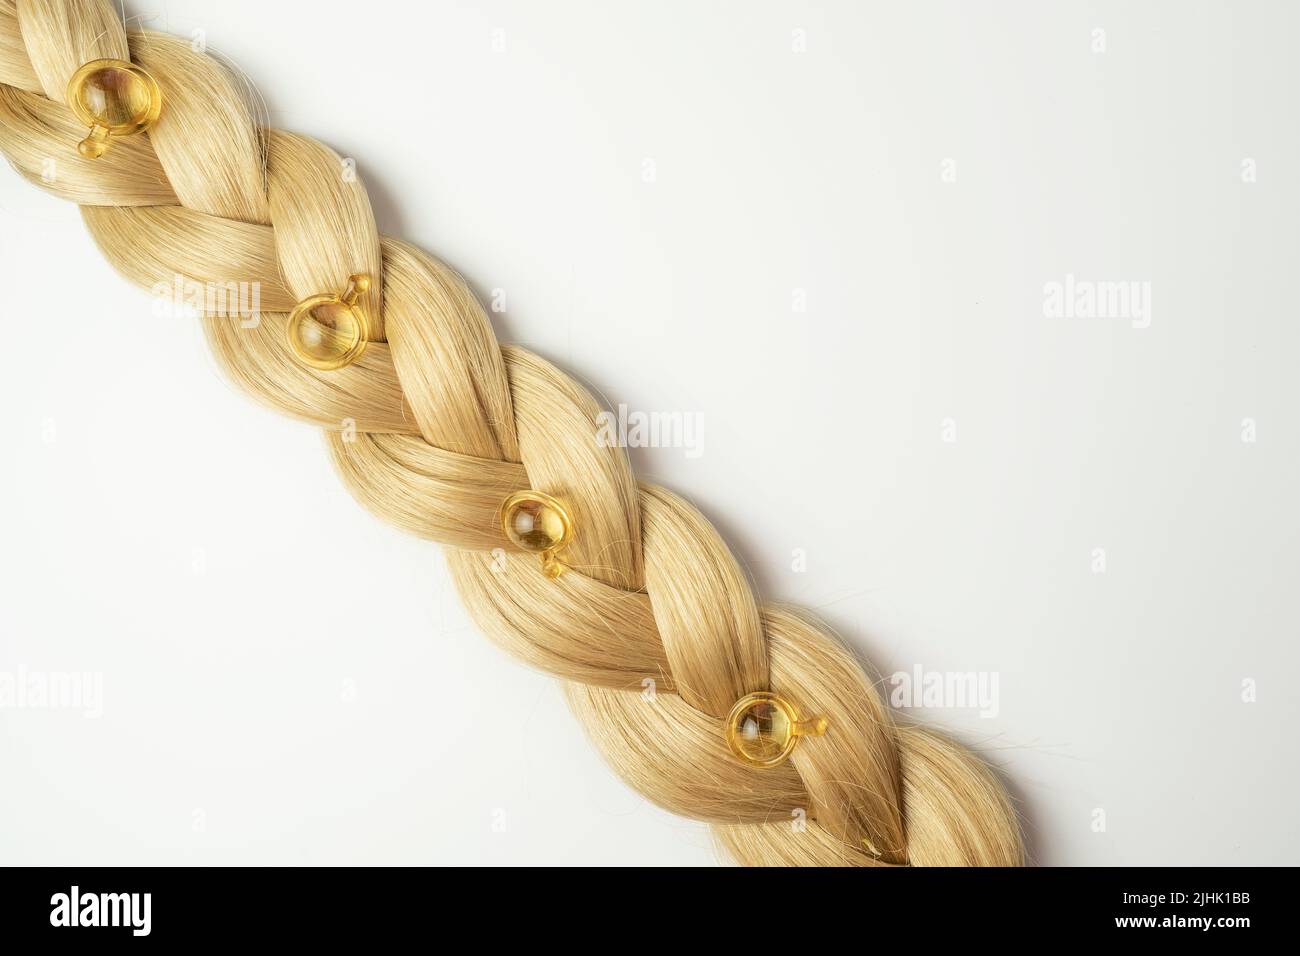 Ein natürliches ätherisches Öl oder Serum für die Haarpflege in goldenen Kapseln, die auf einem Strang blondes Haar liegen. Haarpflege und Glättung Konzept Stockfoto